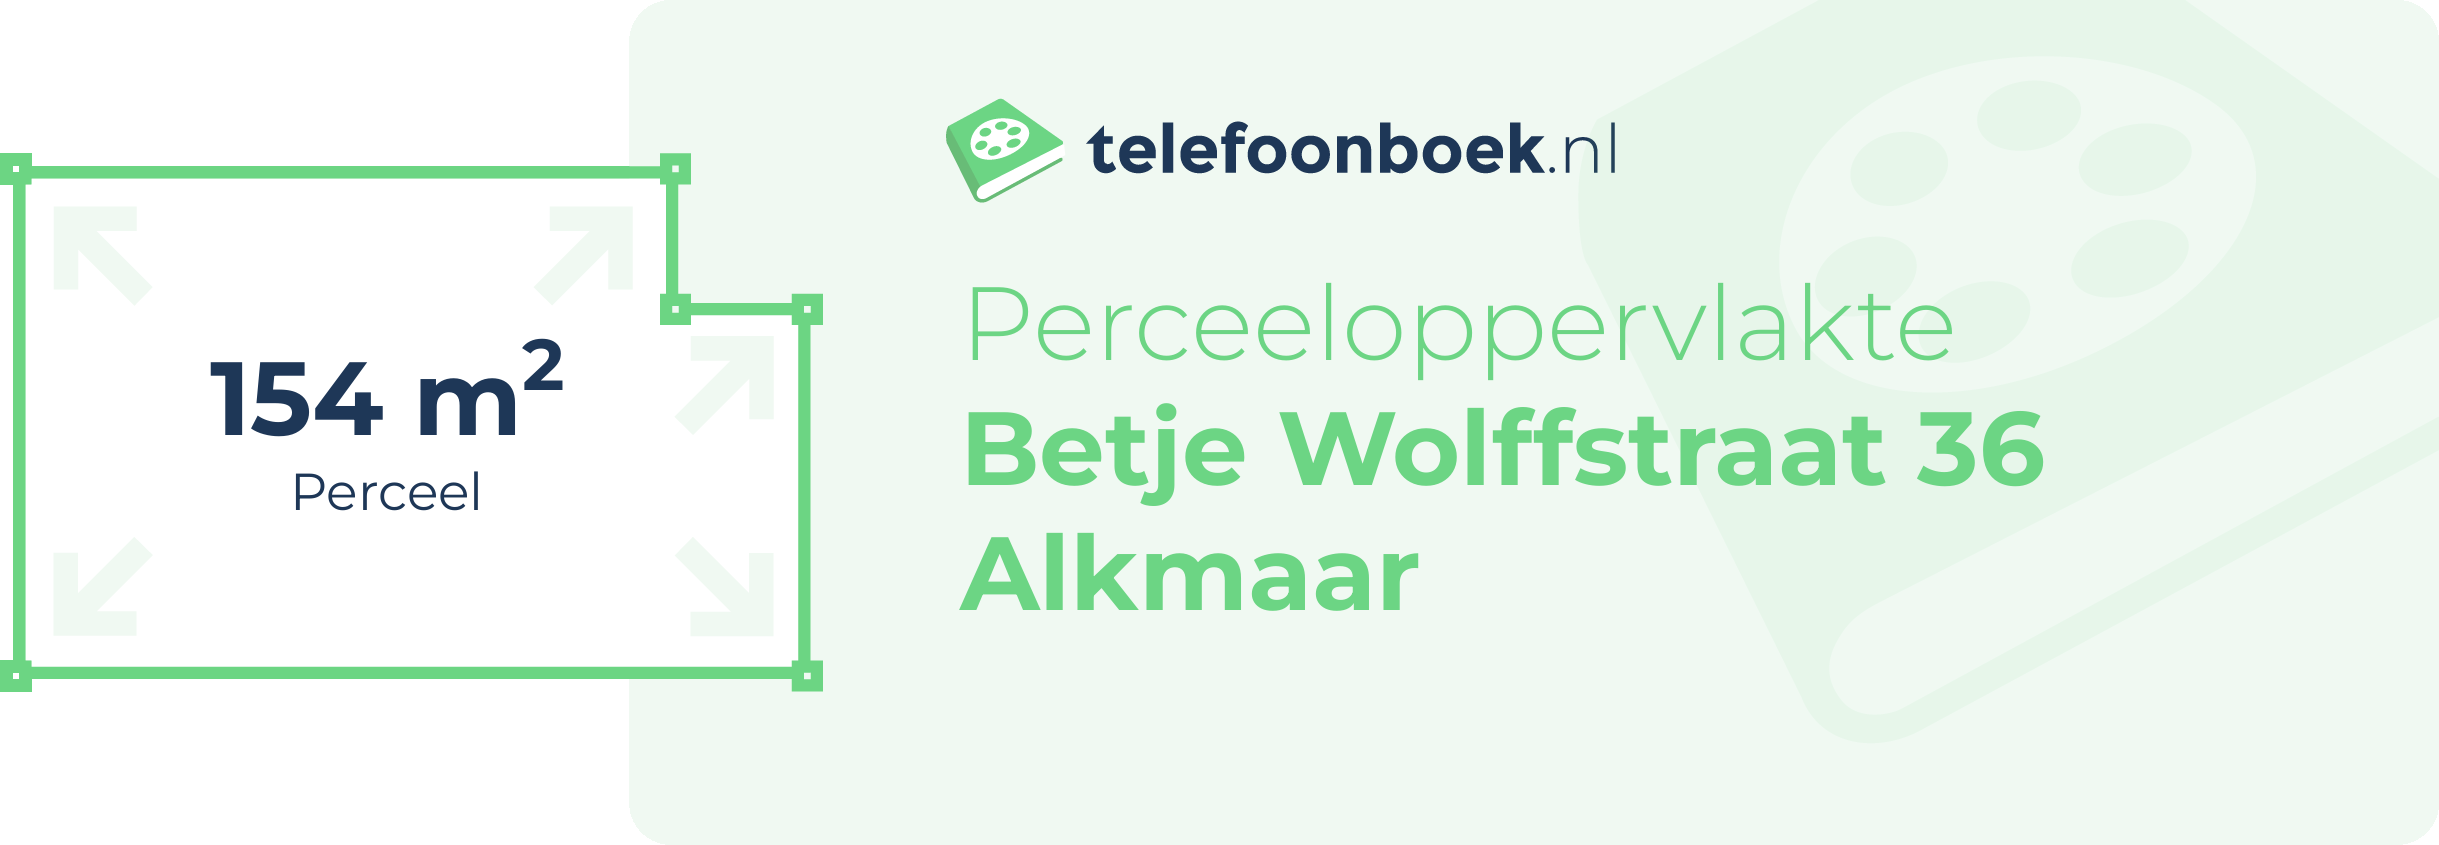 Perceeloppervlakte Betje Wolffstraat 36 Alkmaar